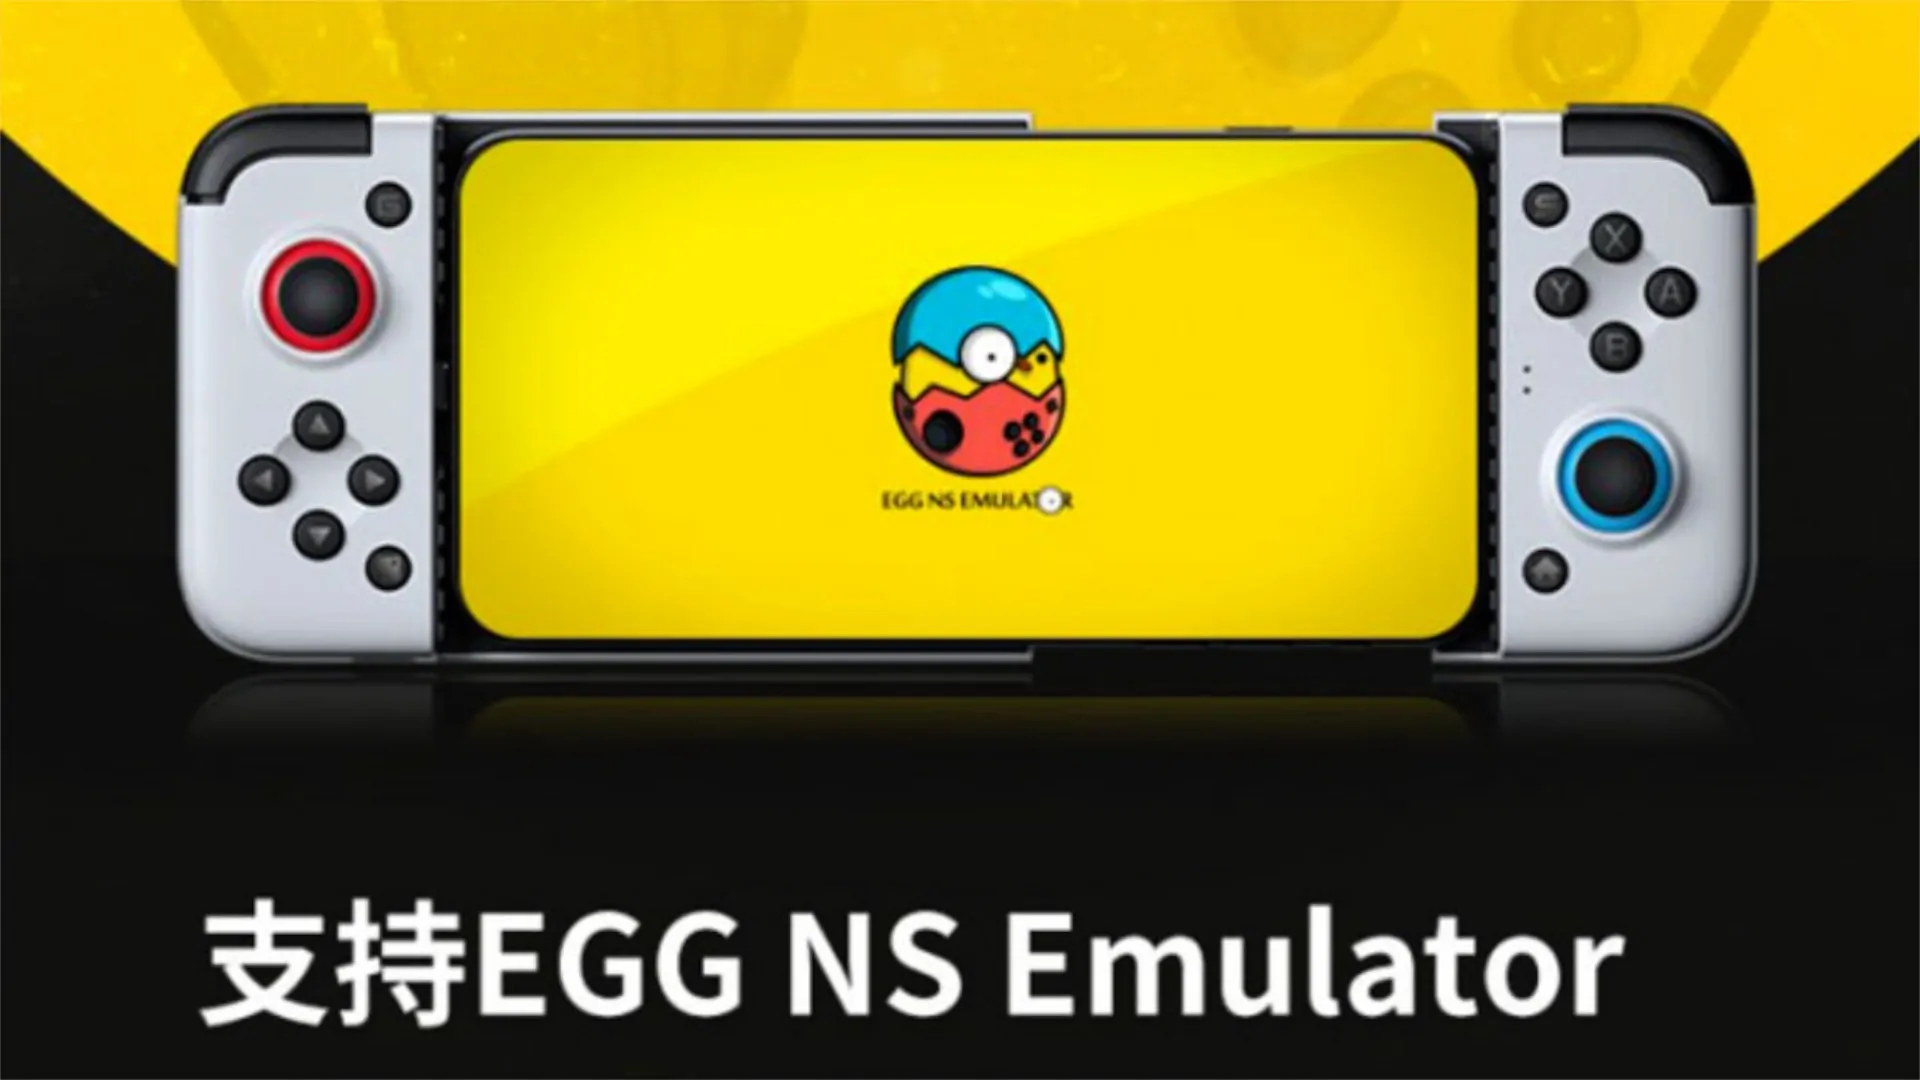 egg-ns-emulator-porta-nintendo-switch-su-android-1 Egg NS 2.1.1: como está o emulador de Switch para Android um ano depois